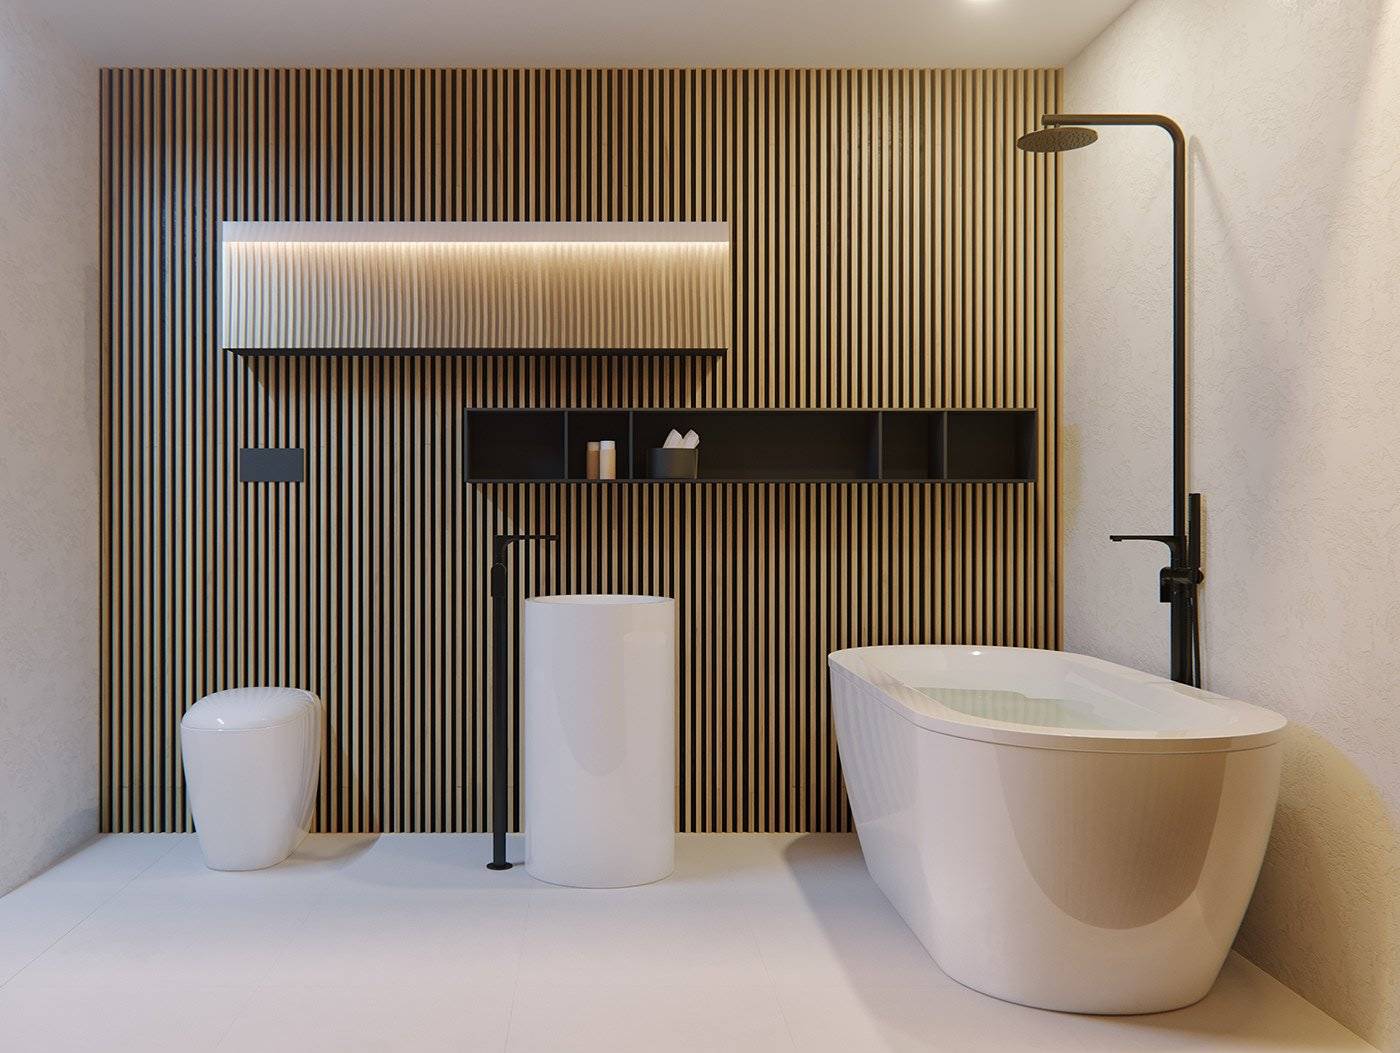 100 фото современного дизайна интерьера квартиры в стиле минимализм 2021